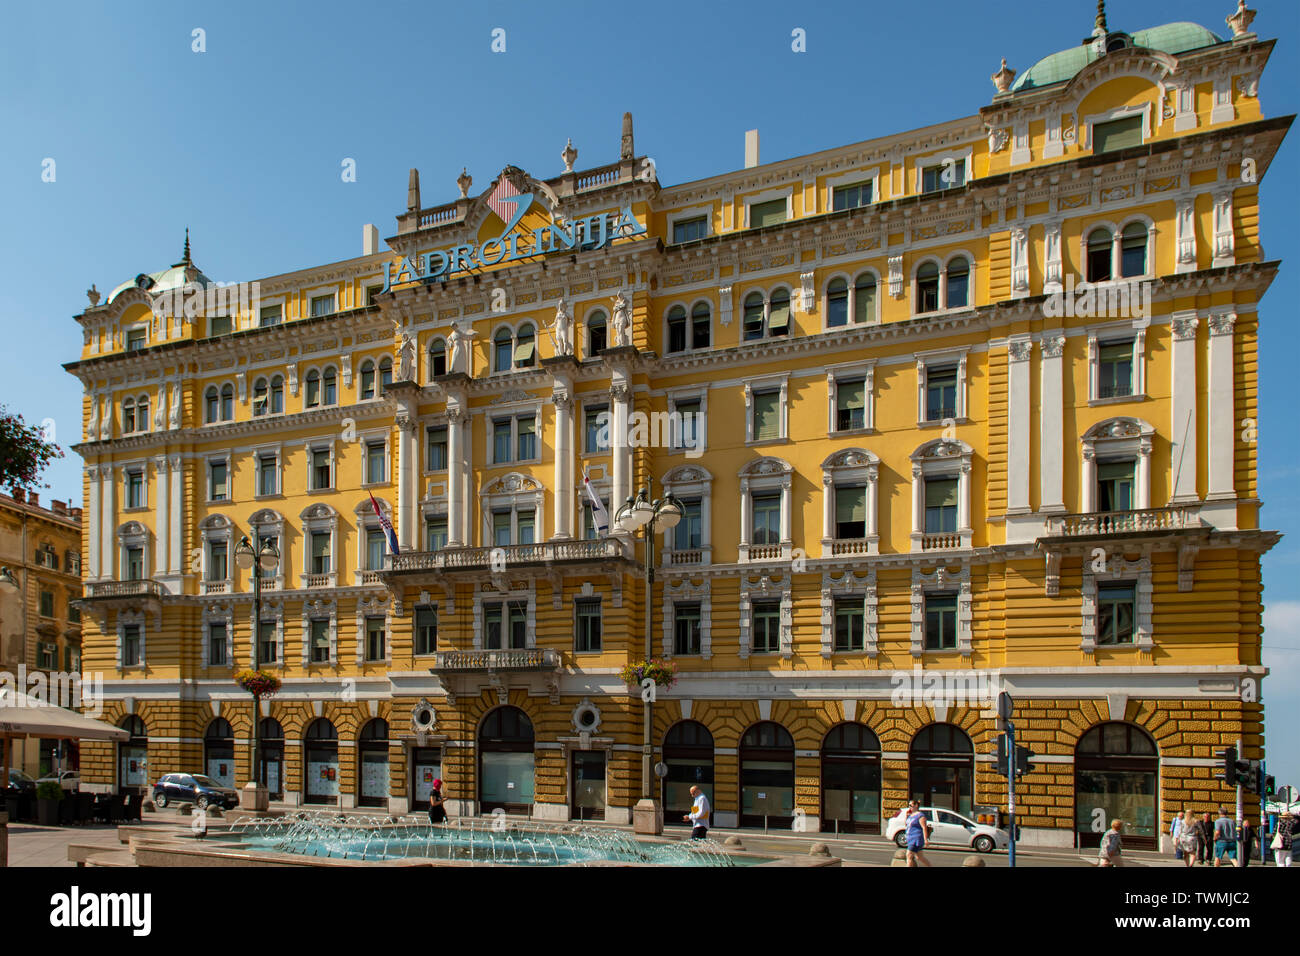 Jadrolinija Hotel, Rijeka, Croatia Stock Photo